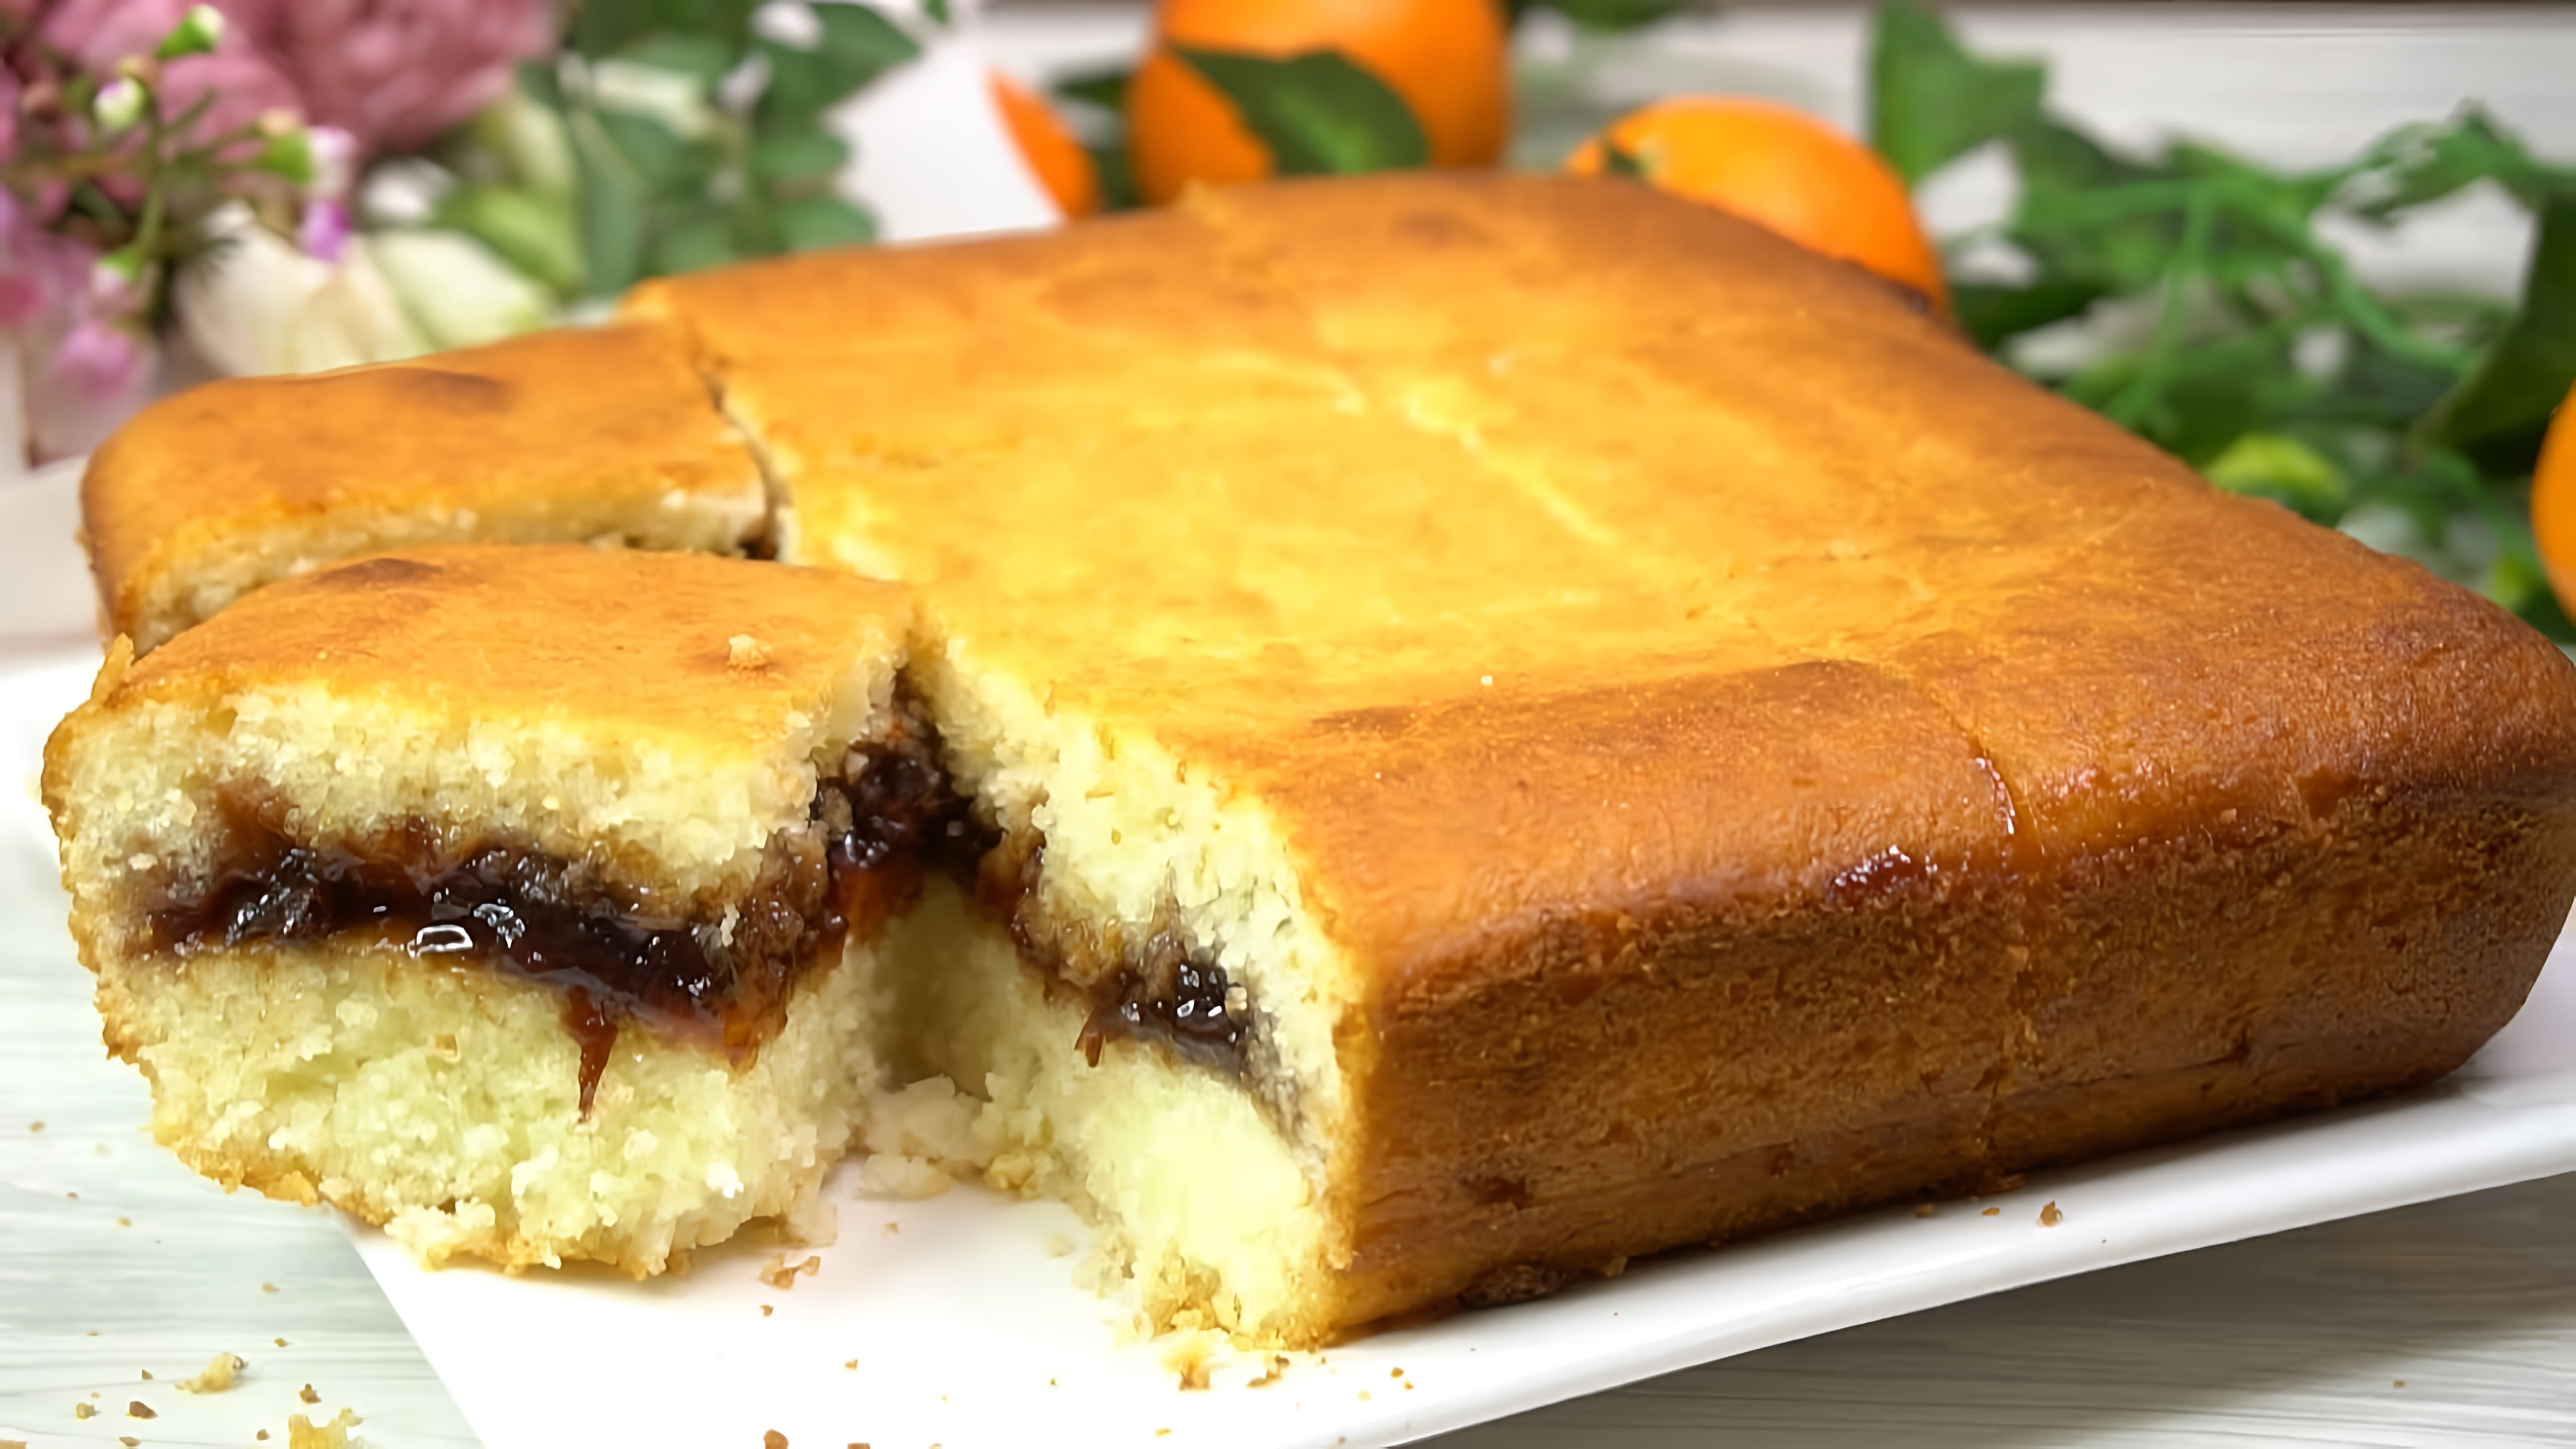 В этом видео демонстрируется рецепт приготовления пирога "Стаканник"